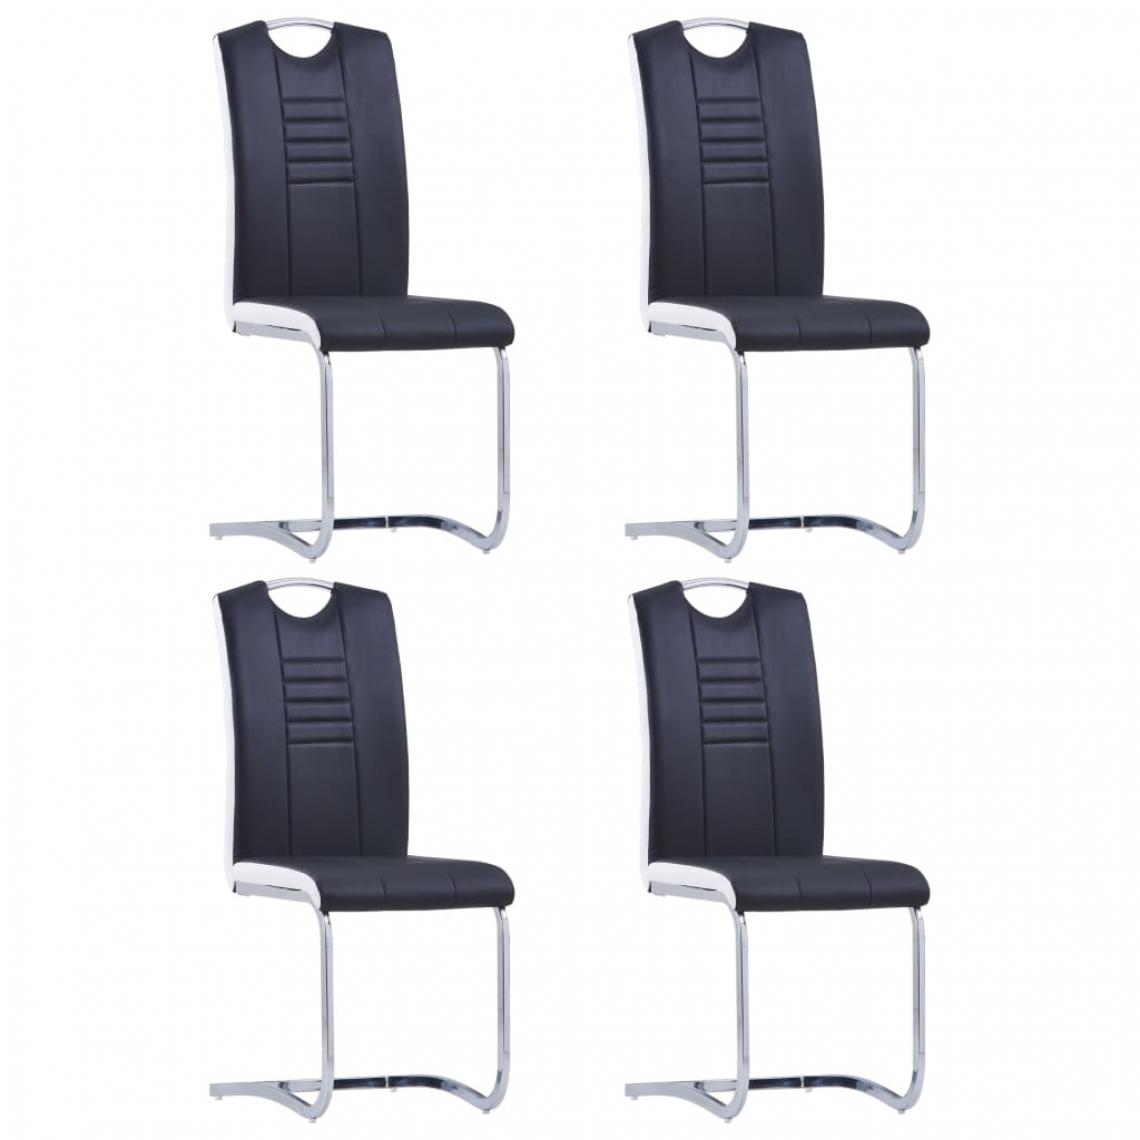 Decoshop26 - Lot de 4 chaises de salle à manger cuisine cantilever design moderne similicuir noir CDS021421 - Chaises